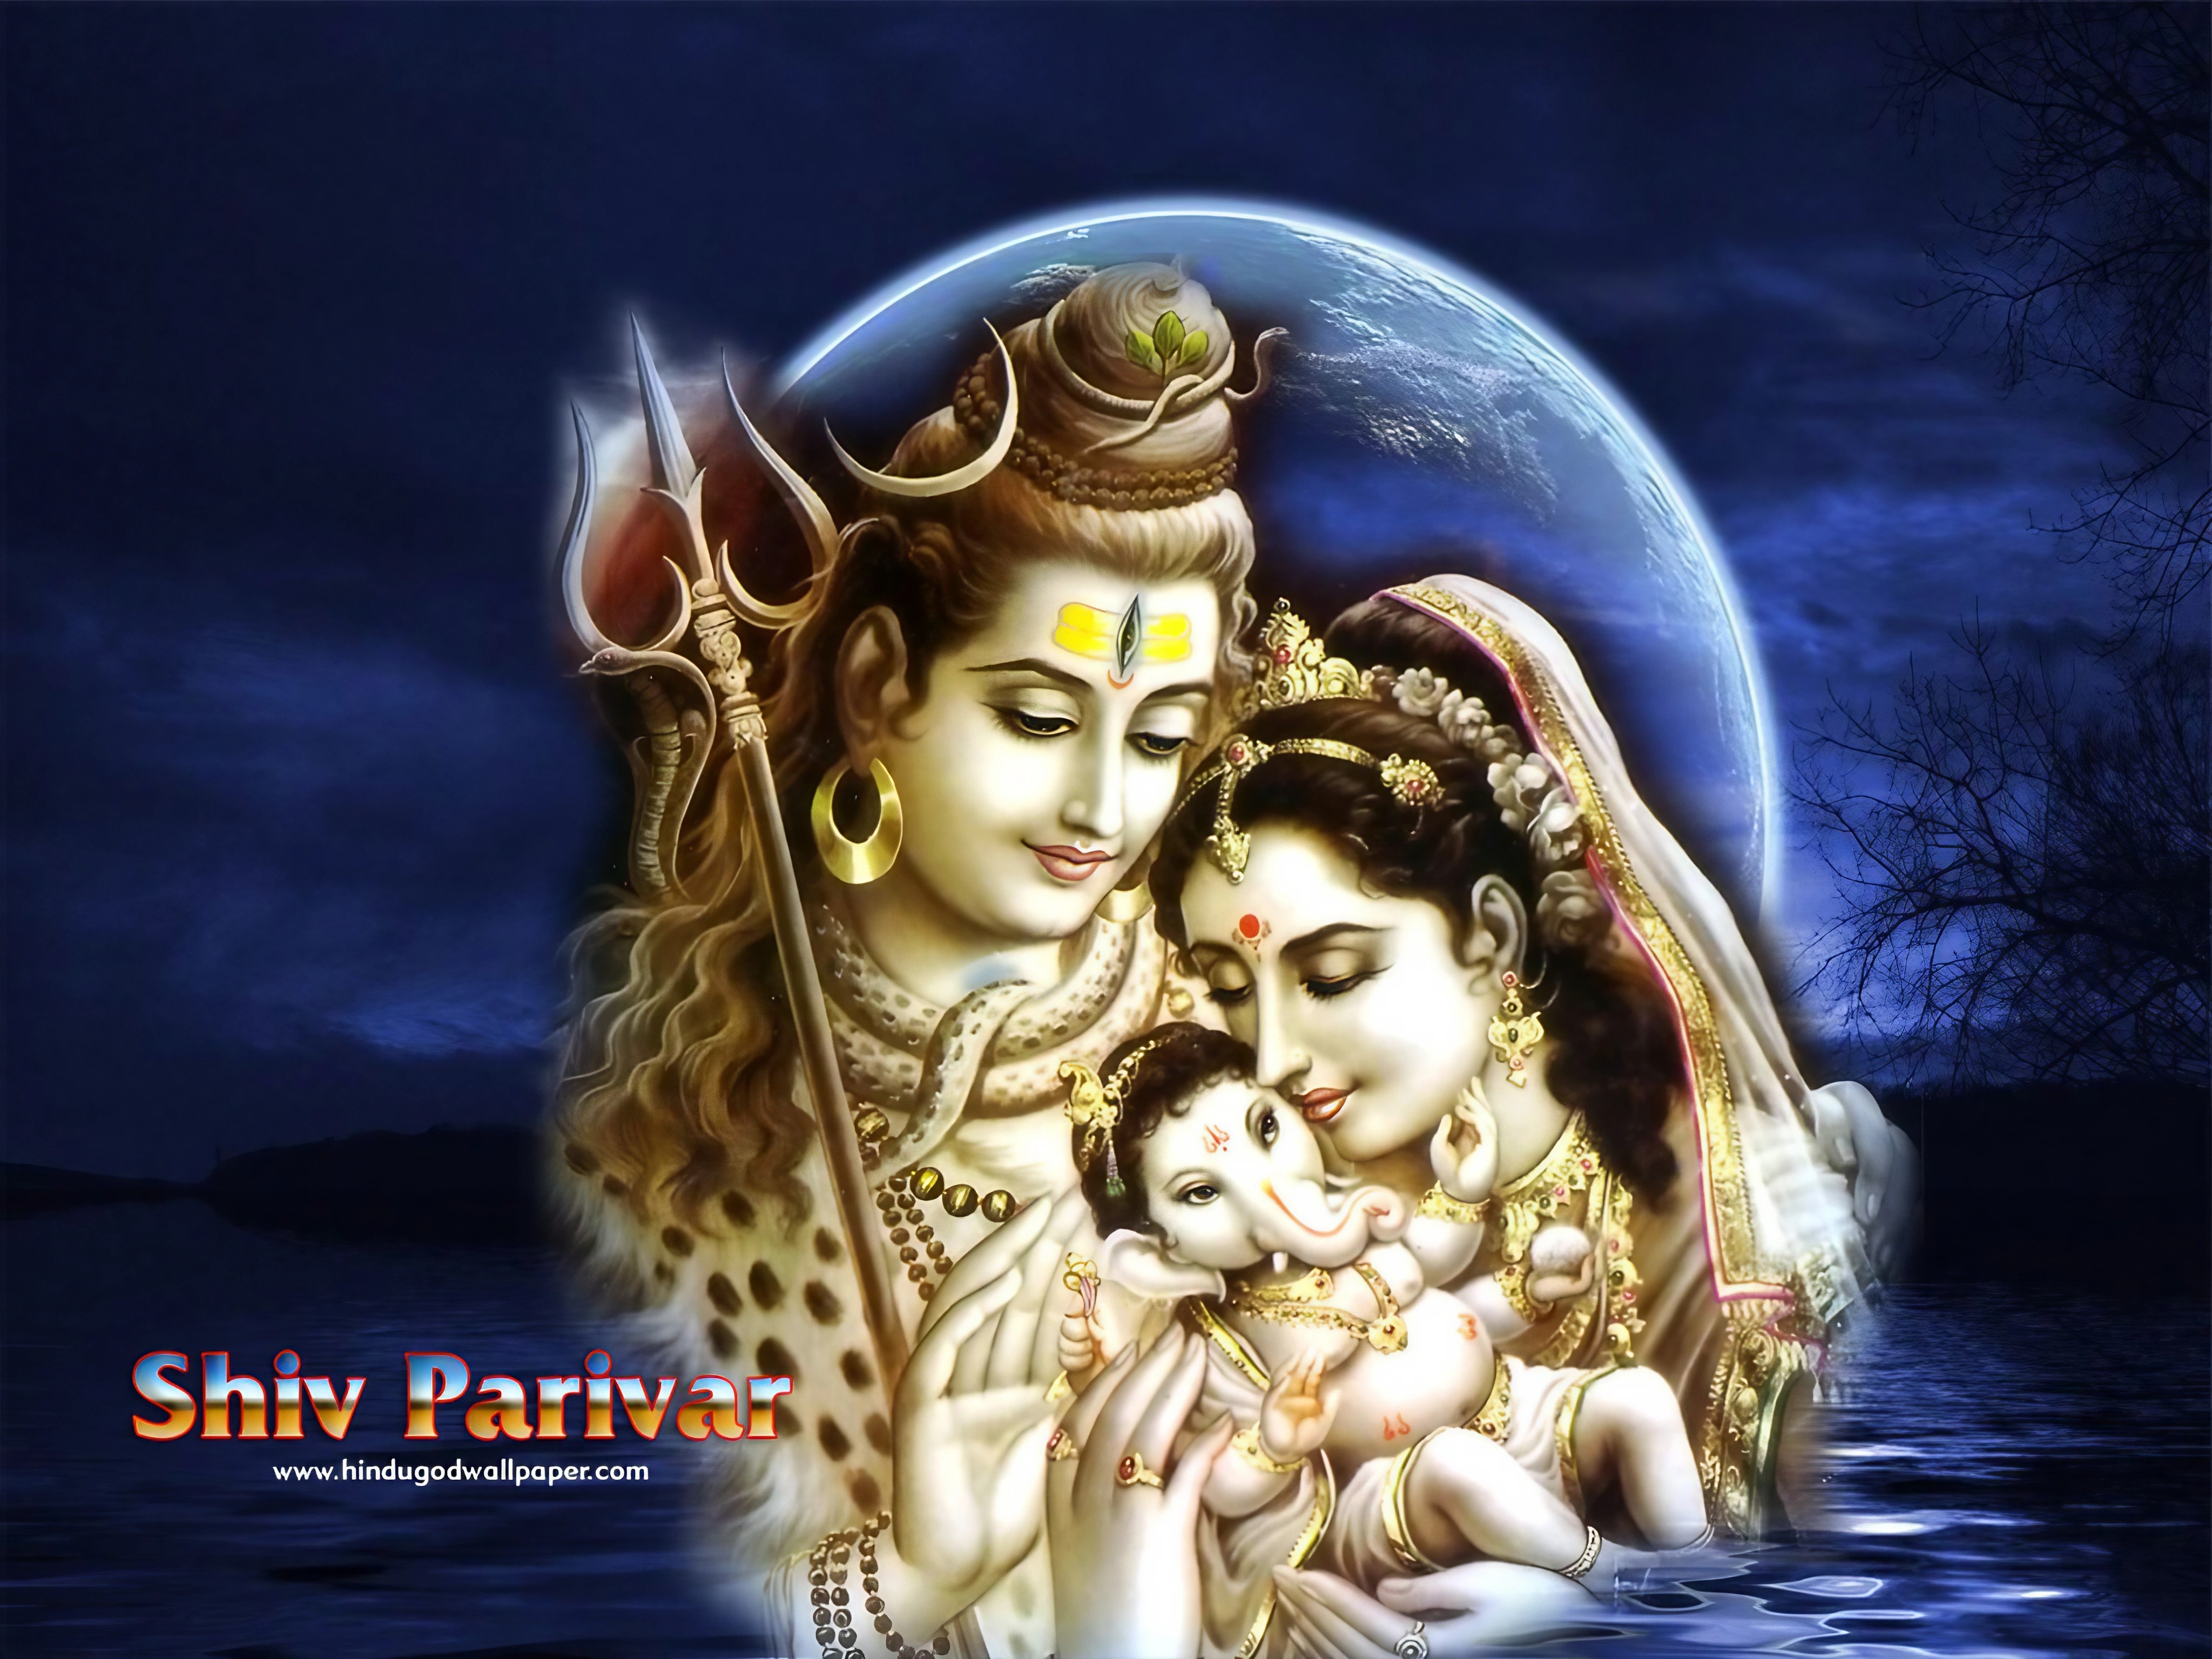 Shiv Parvati Ganesh - shiv parivar